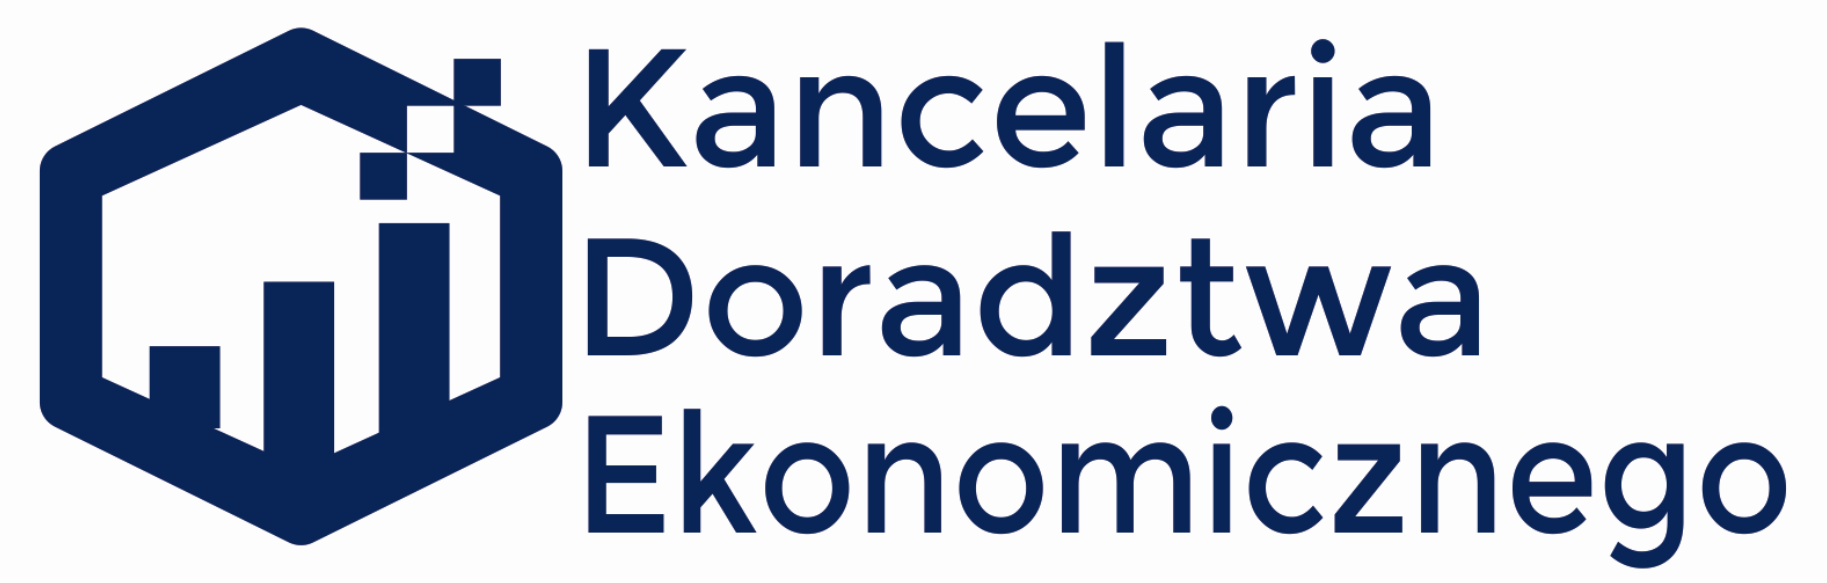 Logo Kancelaria Doradztwa Ekonomicznego Spółka z ograniczoną odpowiedzialnością